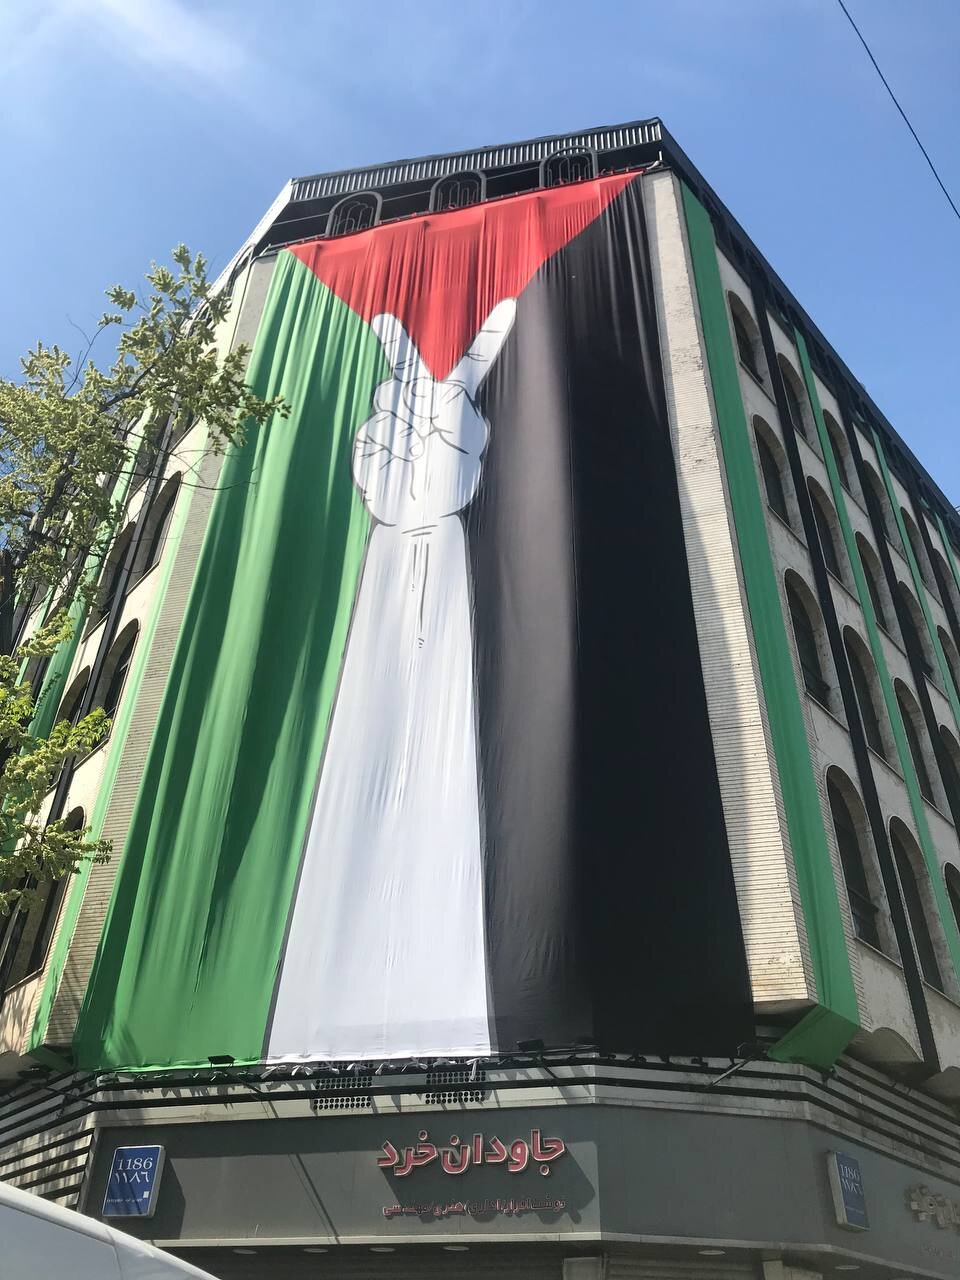 ایرانی عوام کا فلسطینیوں کی حمایت میں اجتماع / تہران میں شہدائے راہ قدس سے تجدید عہد